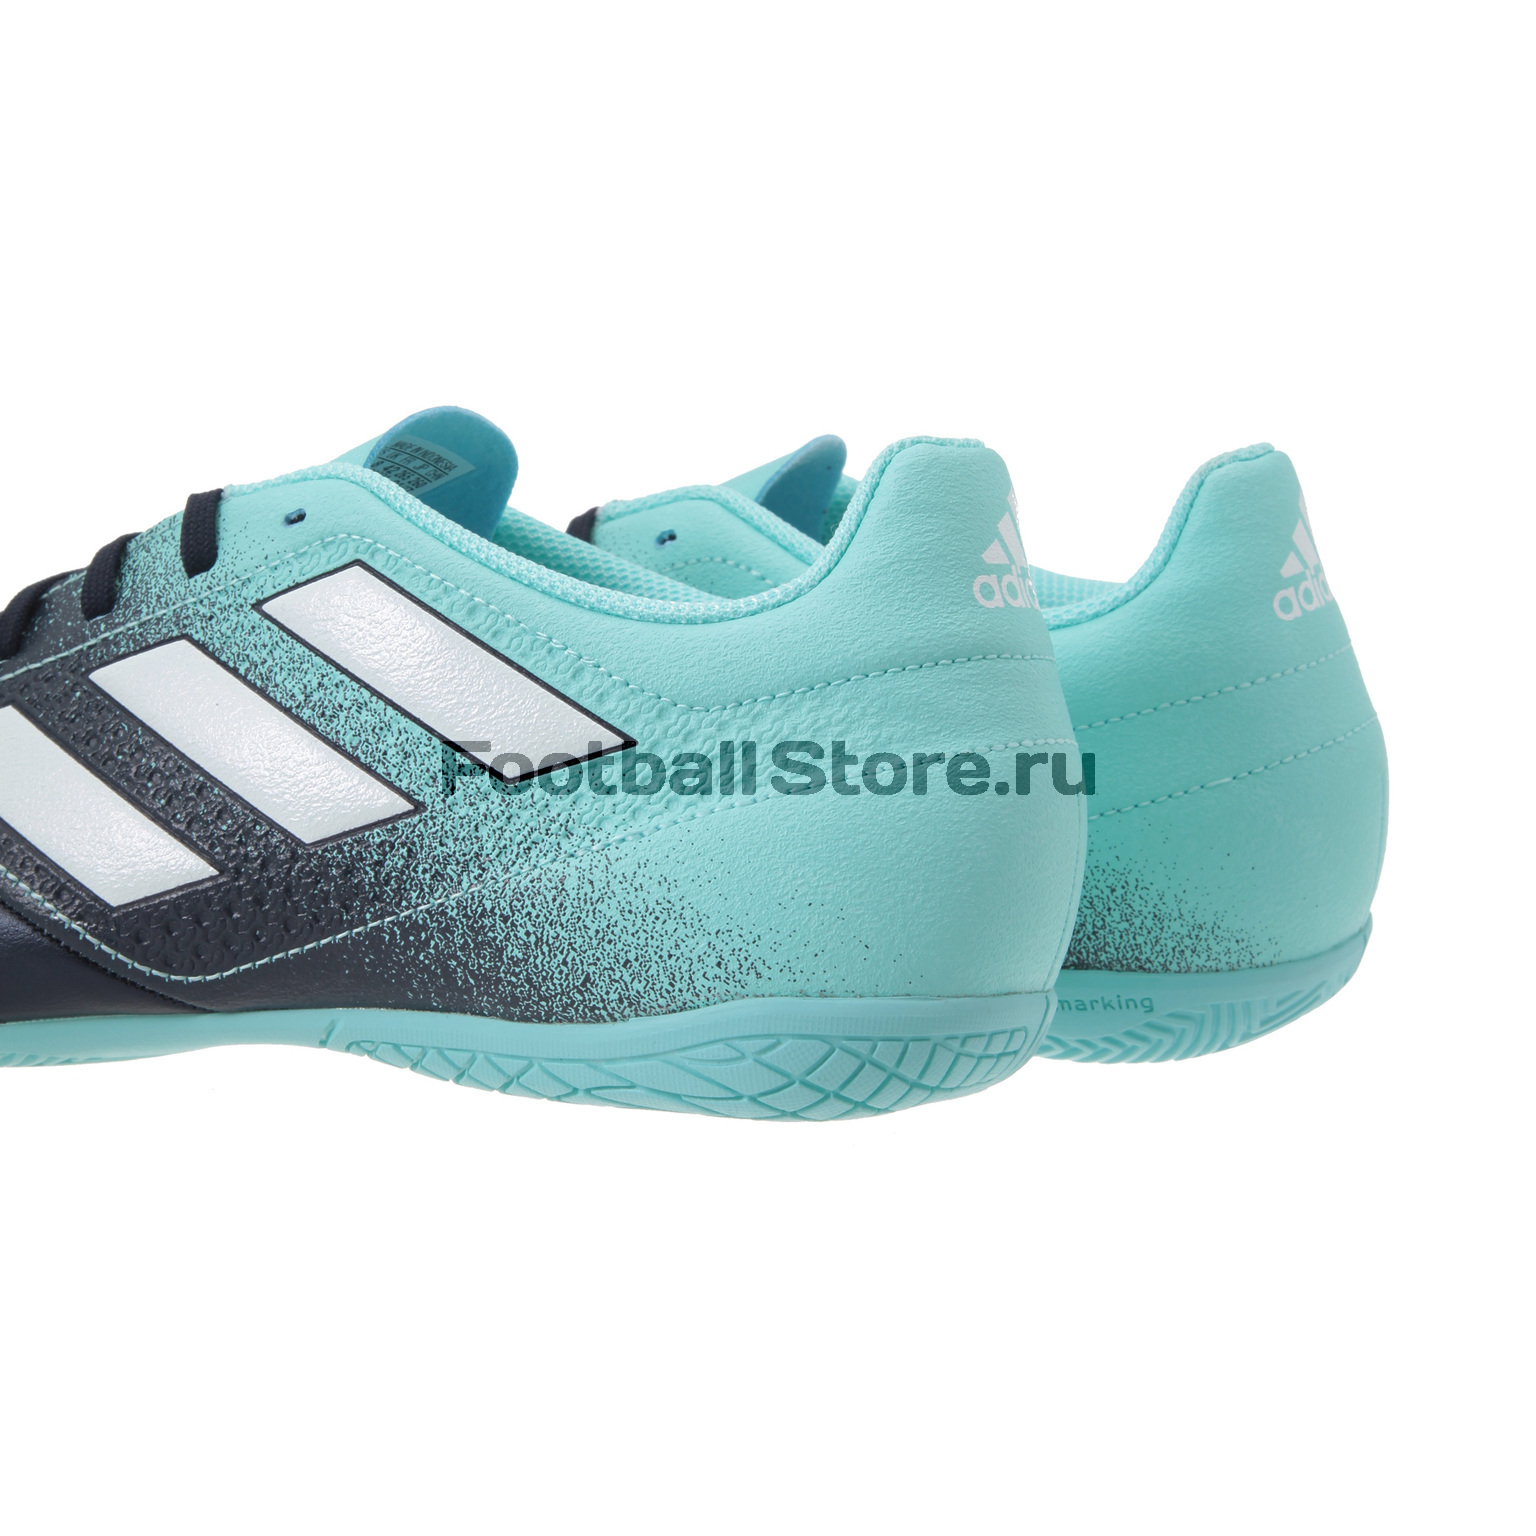 Обувь для зала Adidas Ace 17.4 IN S77102